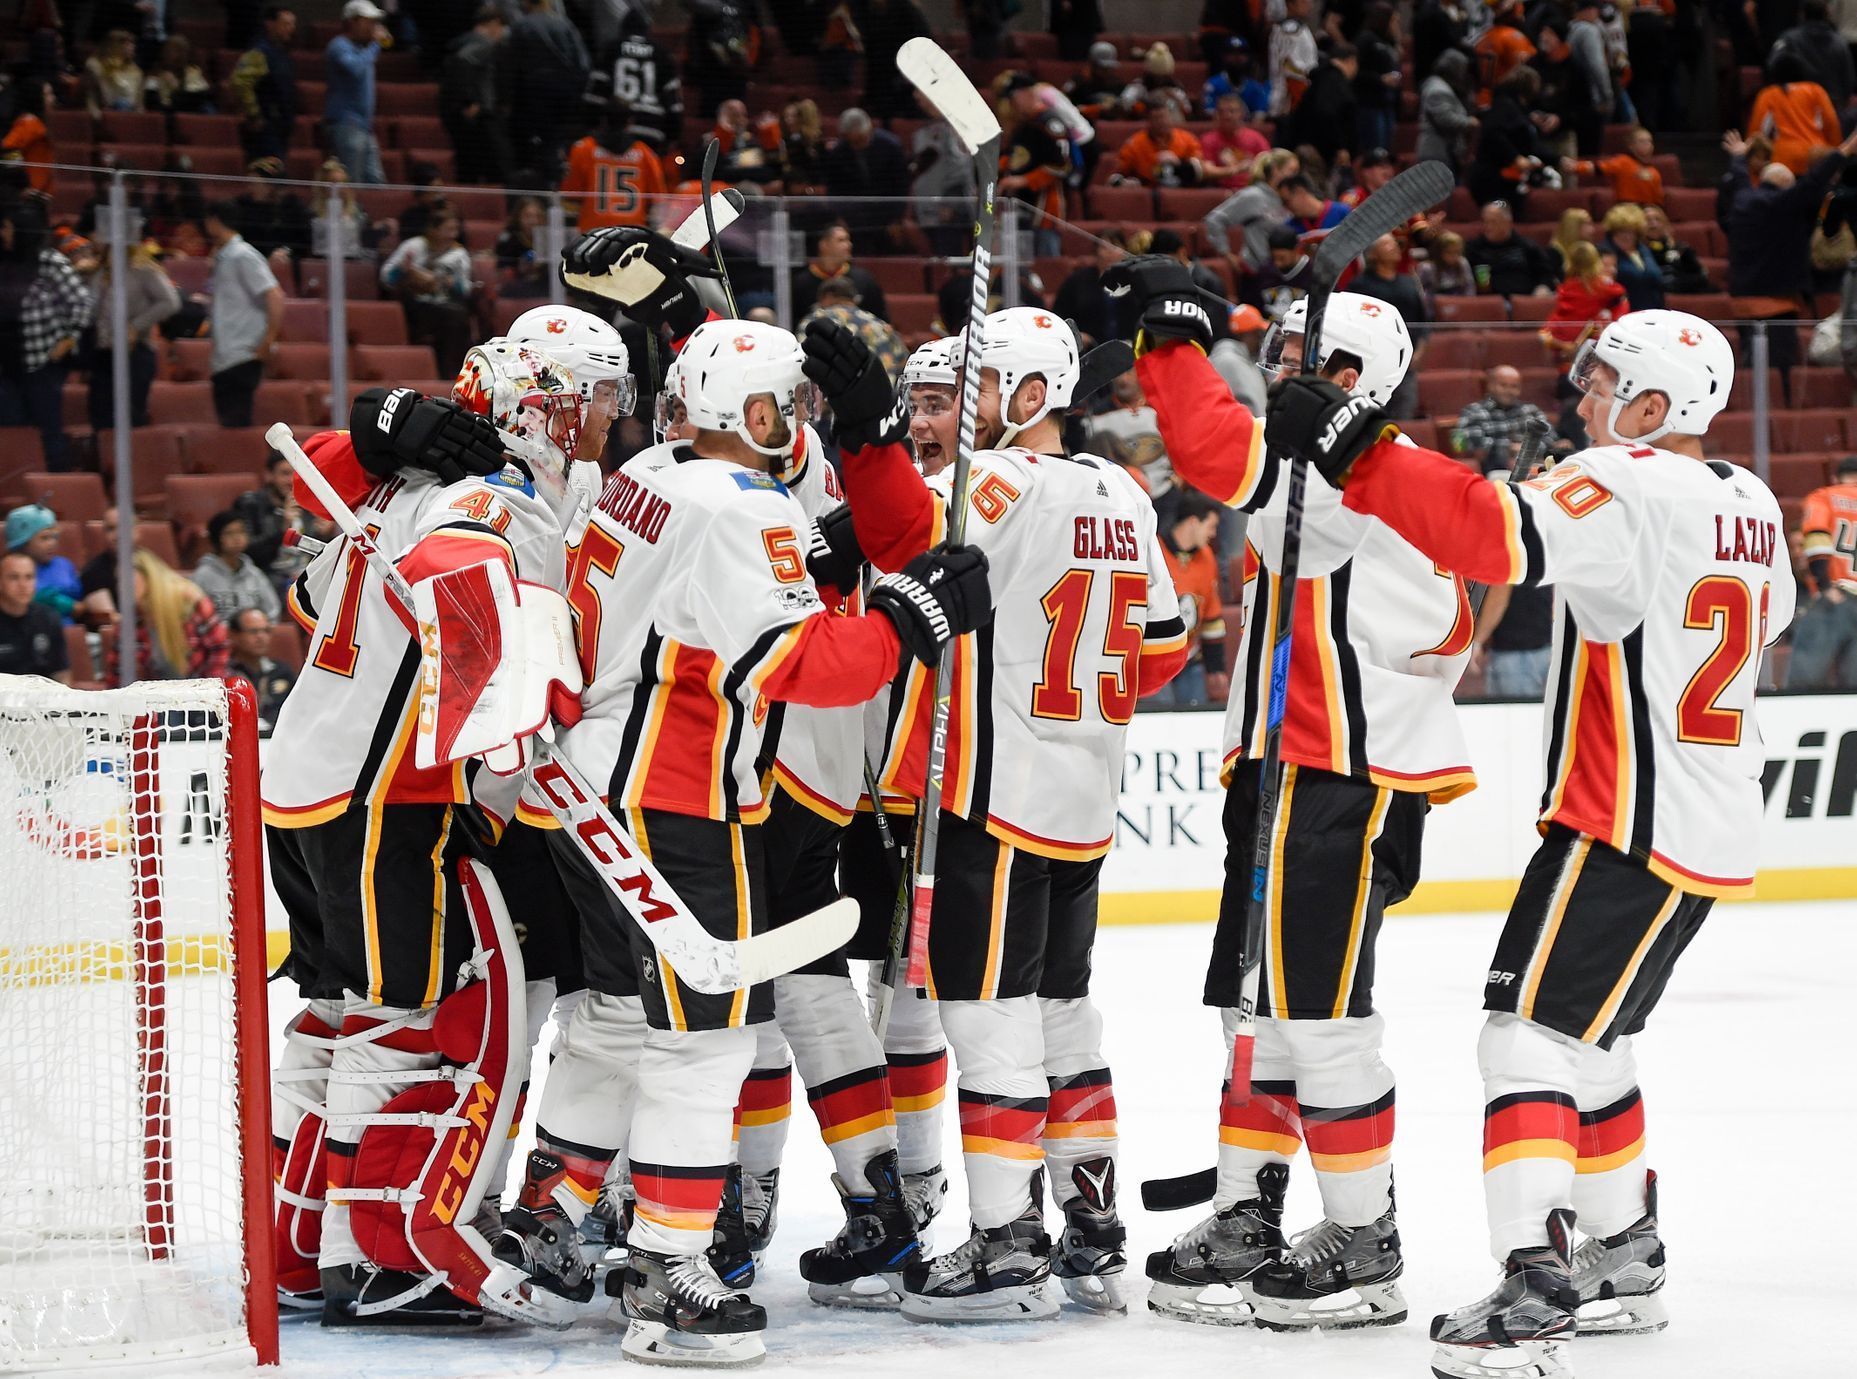 Hokejisté Calgary slaví výhru na ledě Anaheimu